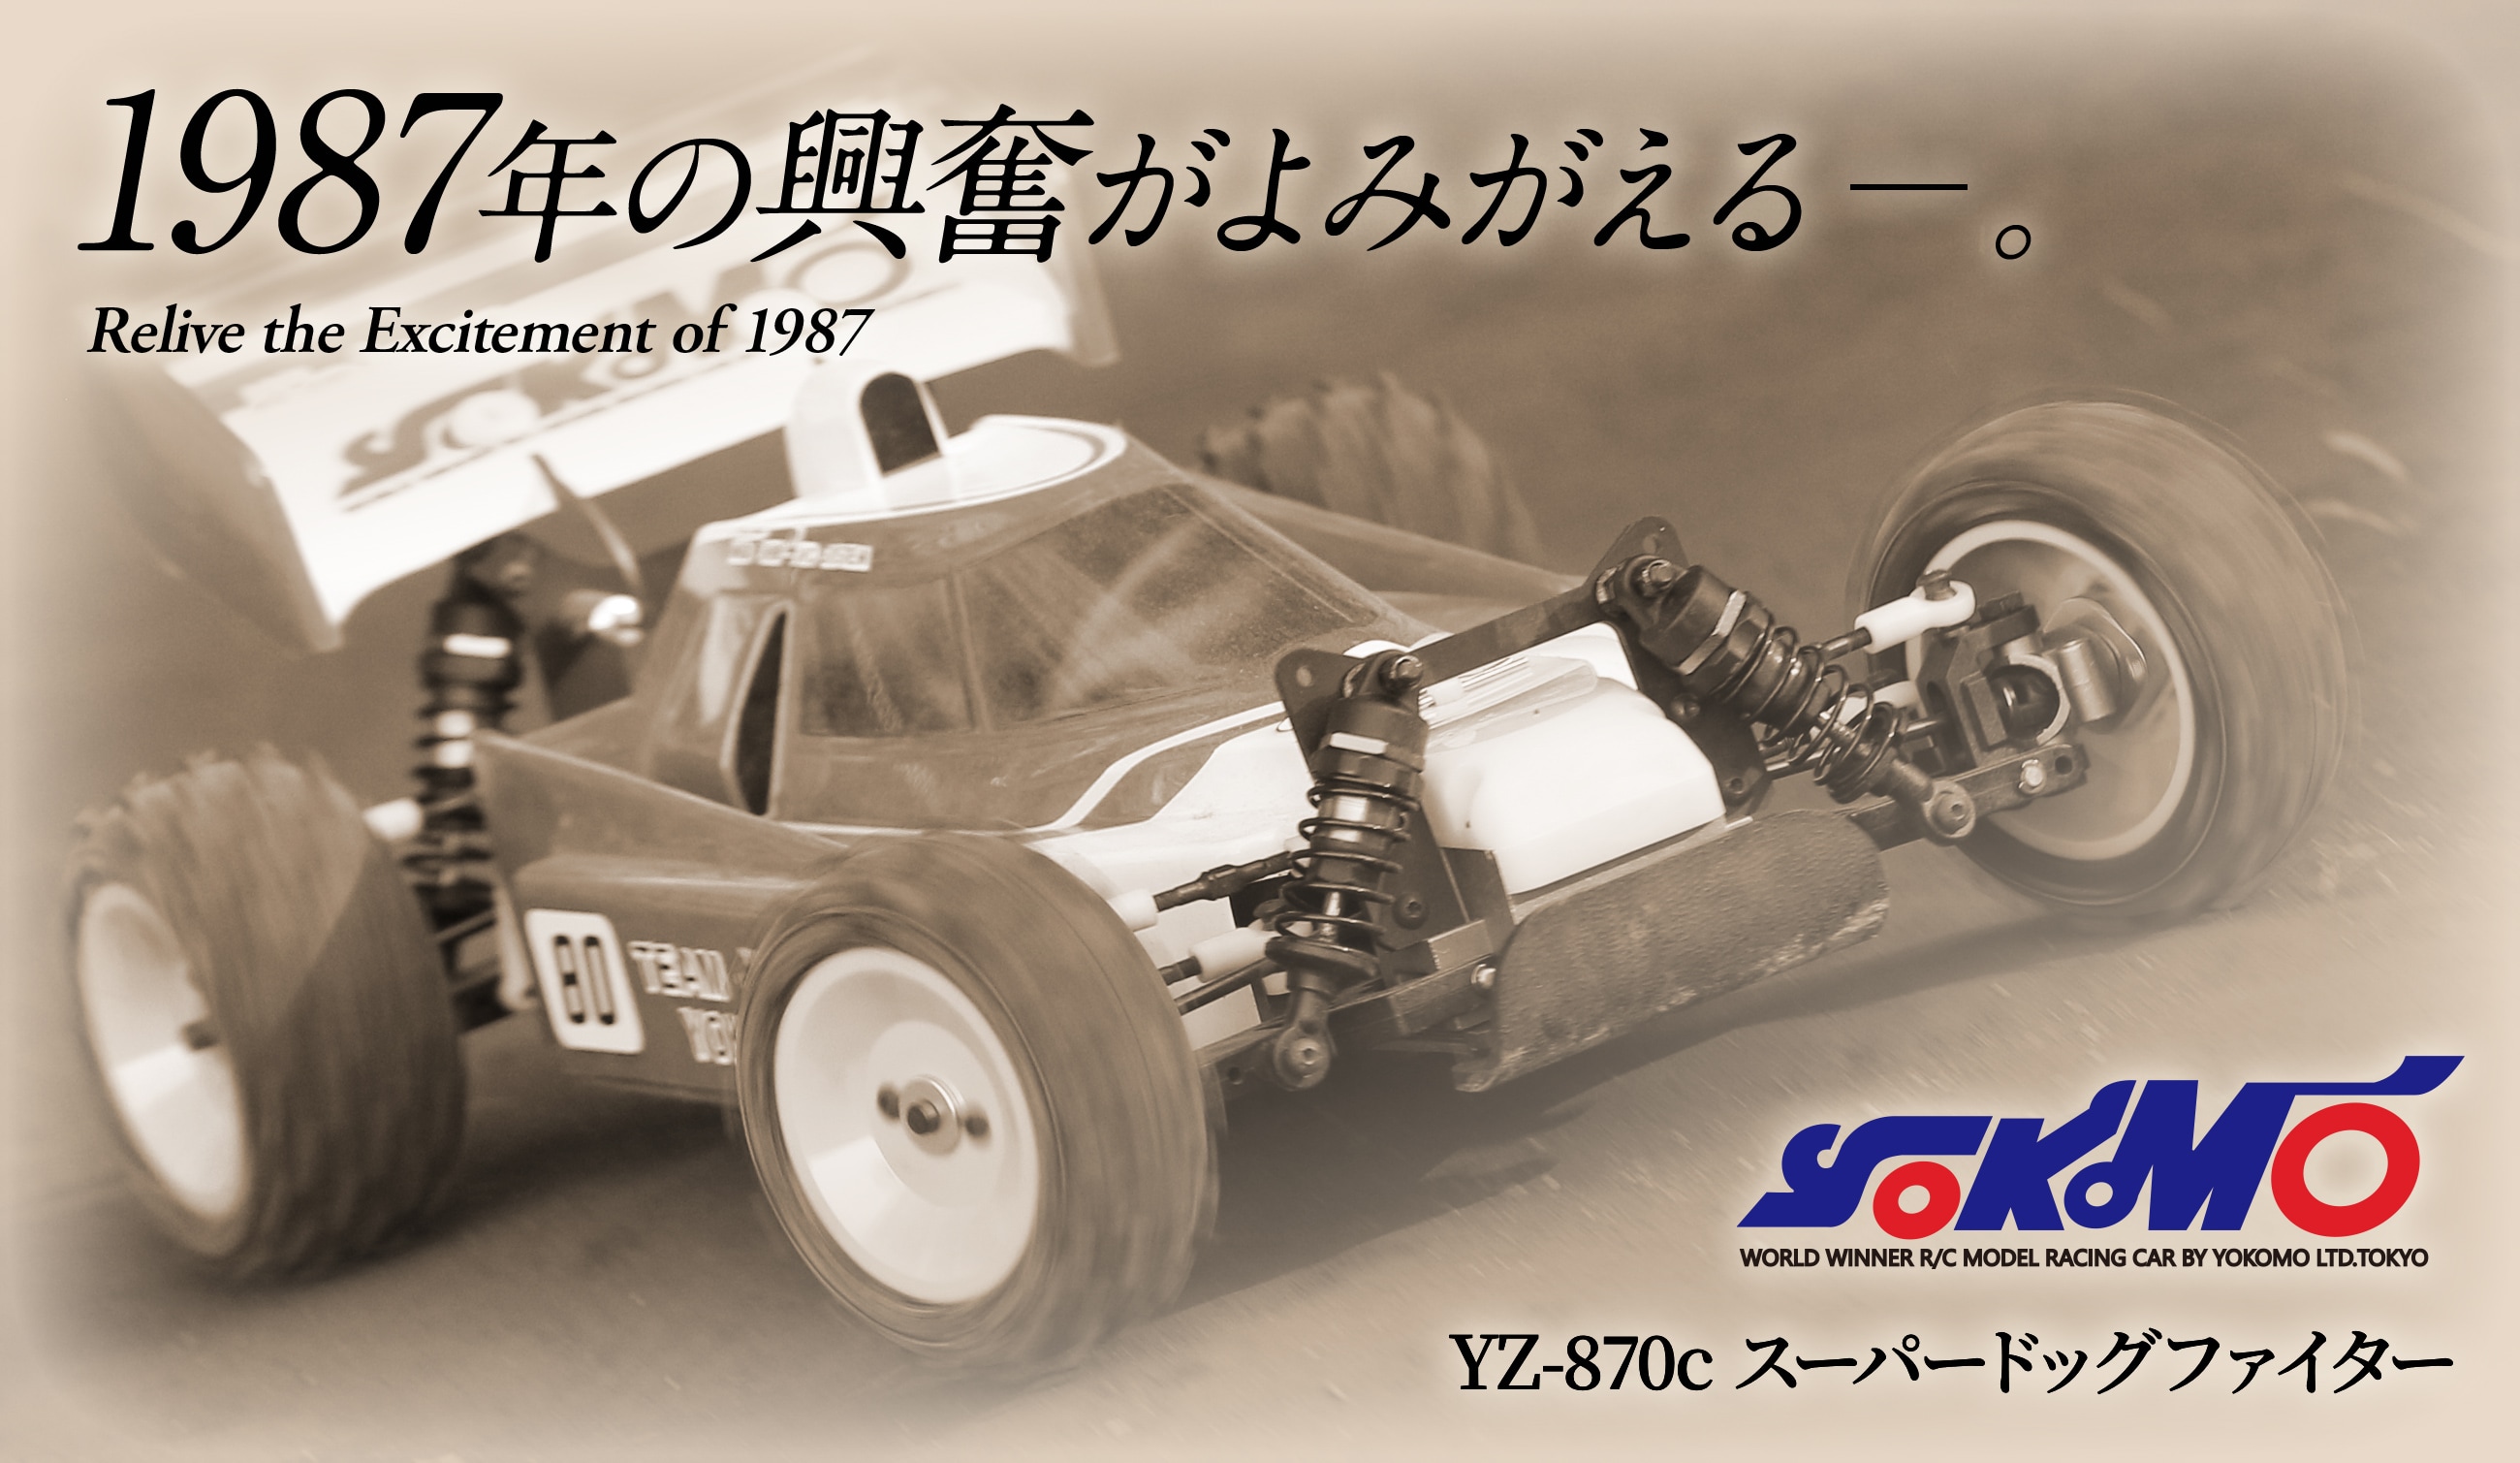 YOKOMO YZ-870cスーパードッグファイター 1987年の興奮がよみがえる